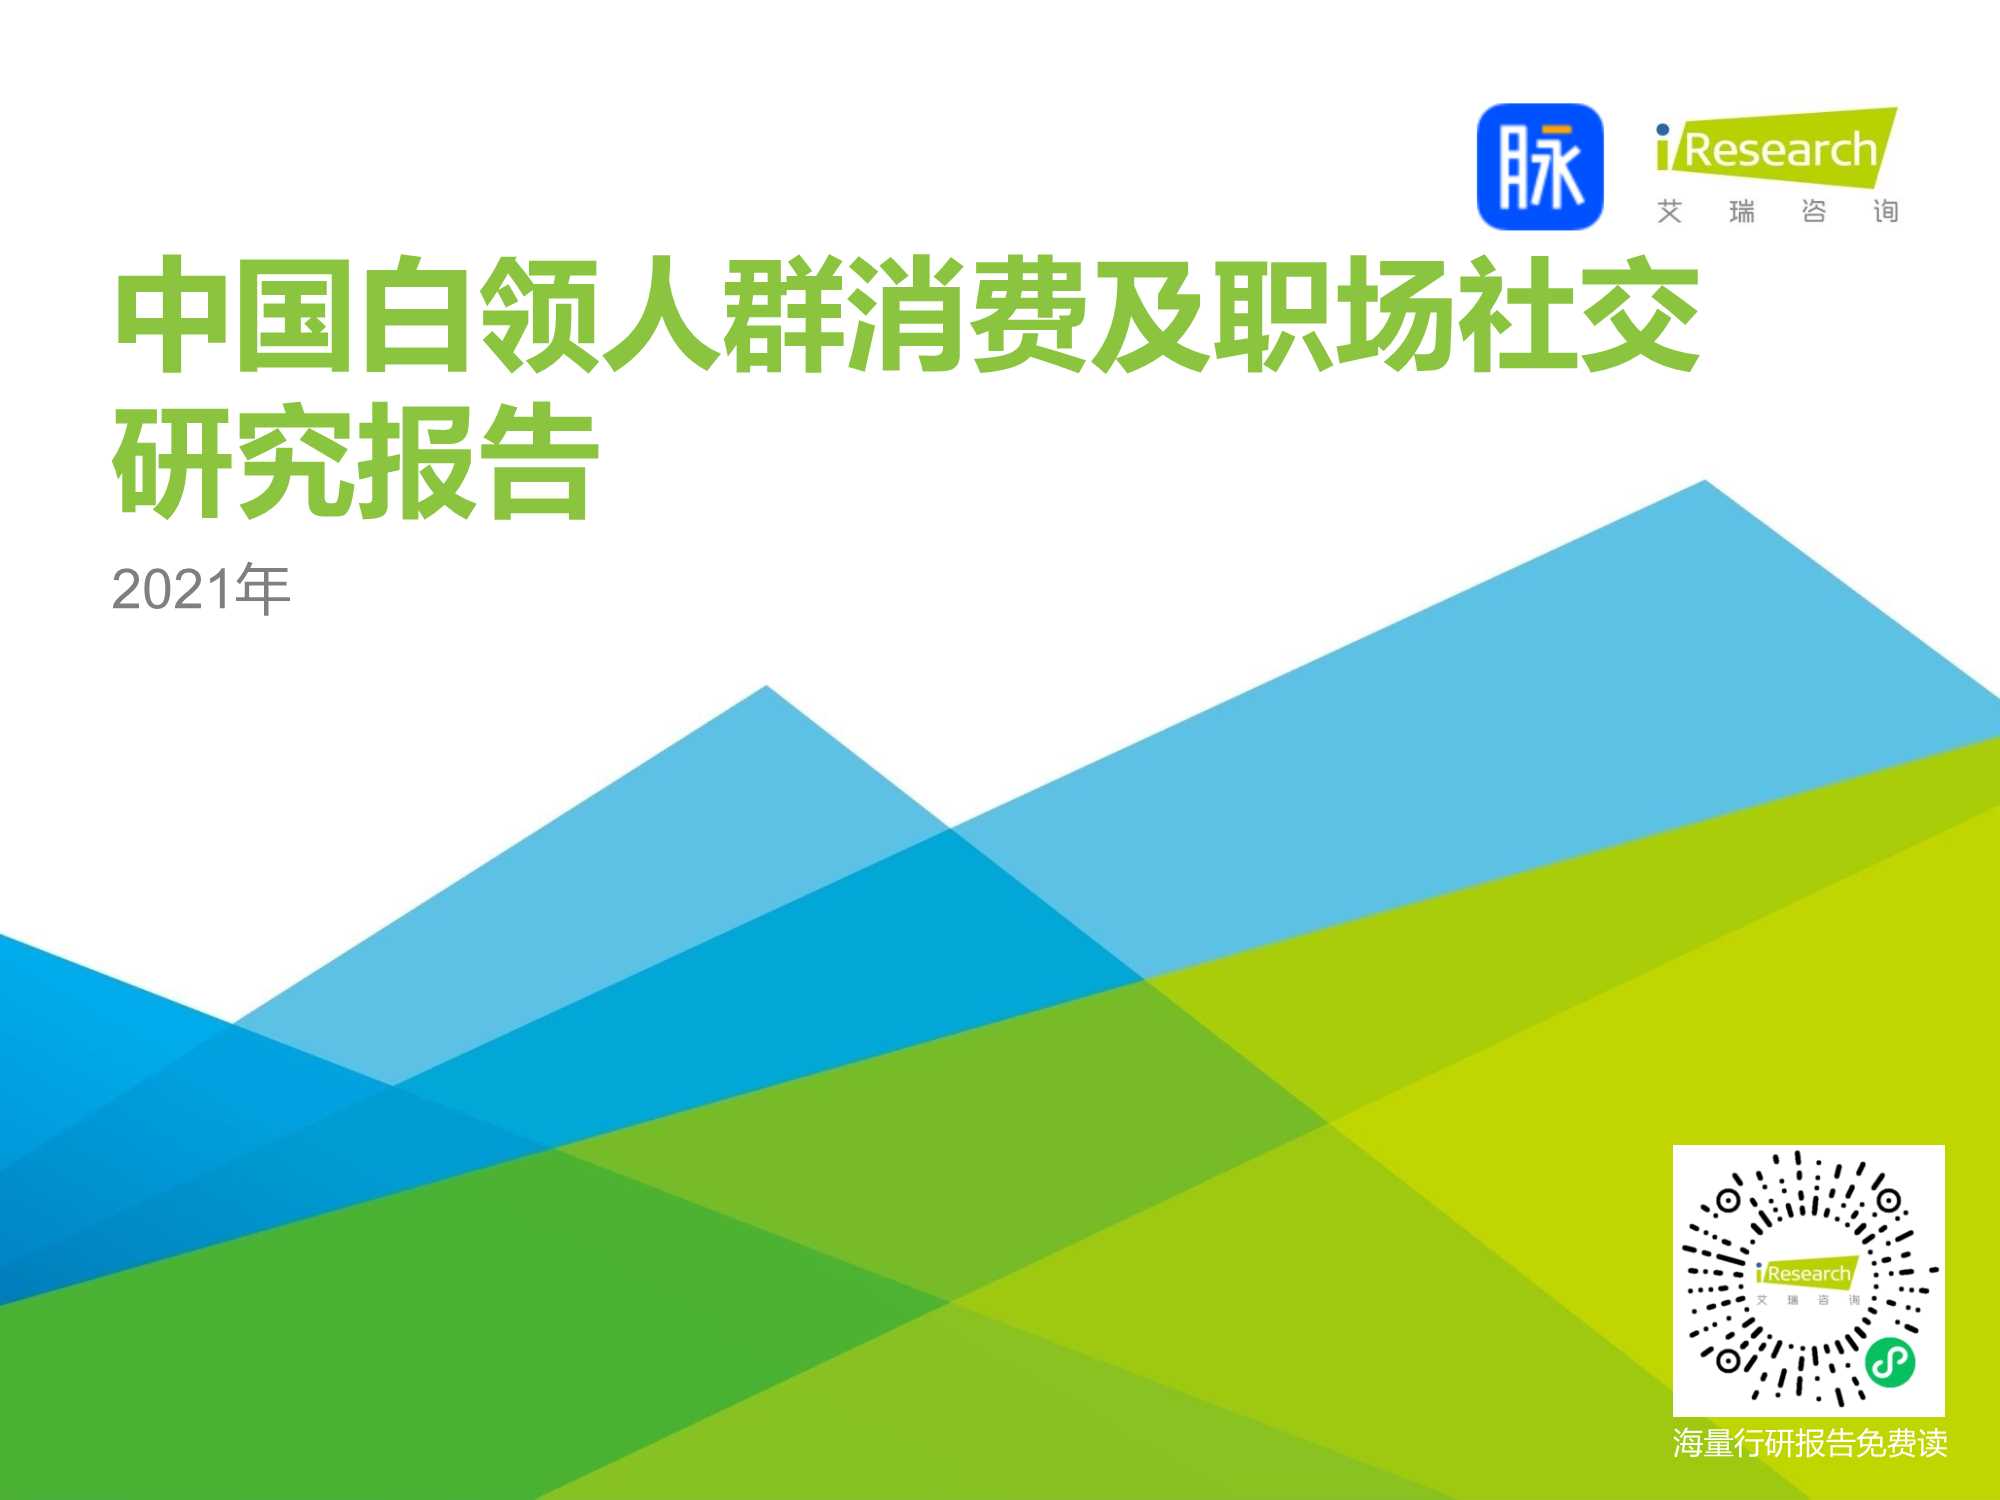 艾瑞咨询-2021年中国白领人群消费及职场社交研究报告-2021.08-45页